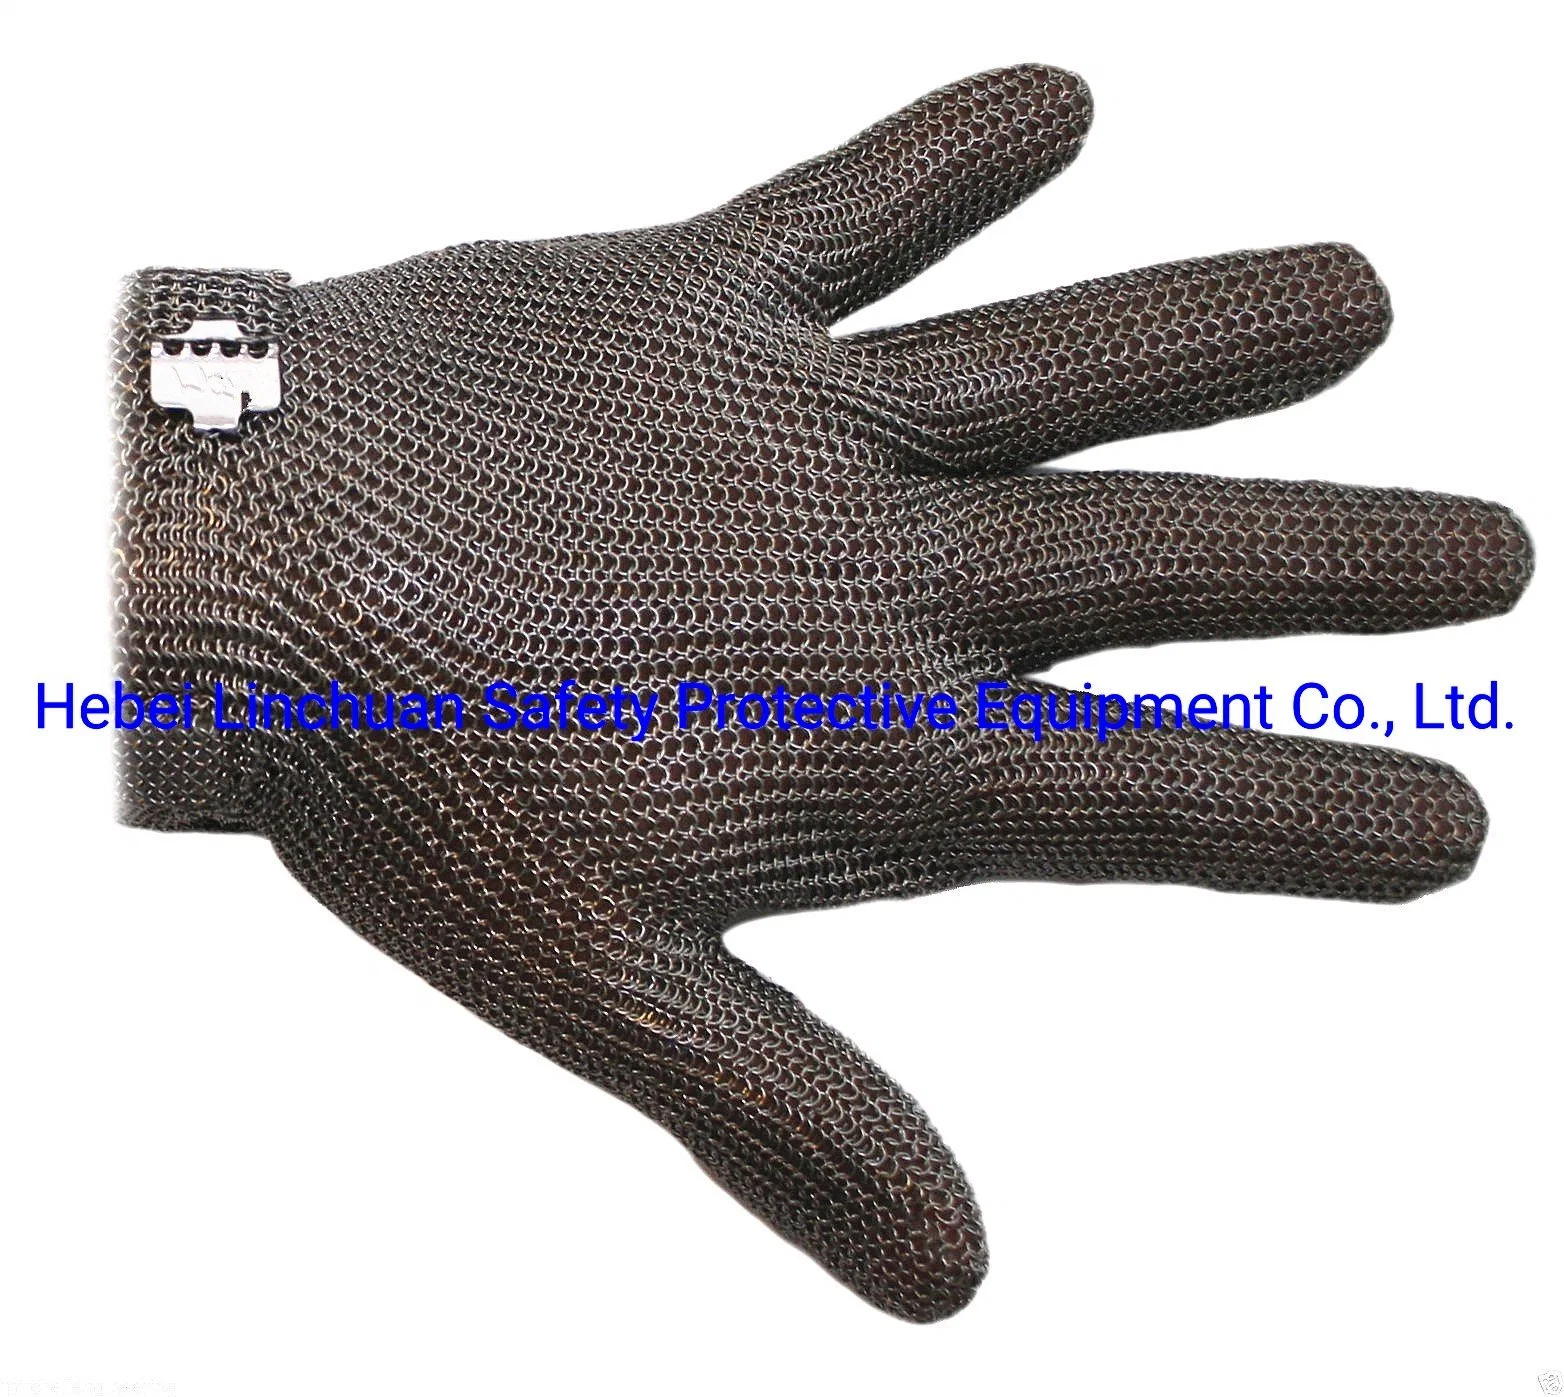 5-пальцевая металлическая решетка перчатка/ защитная перчатка из нержавеющей стали/ Безопасность Работа/Букчер перчатка/Стальная нарезка устойчивая перчатка/ Антиобрезная перчатка/ Букчер Безопасность на работе